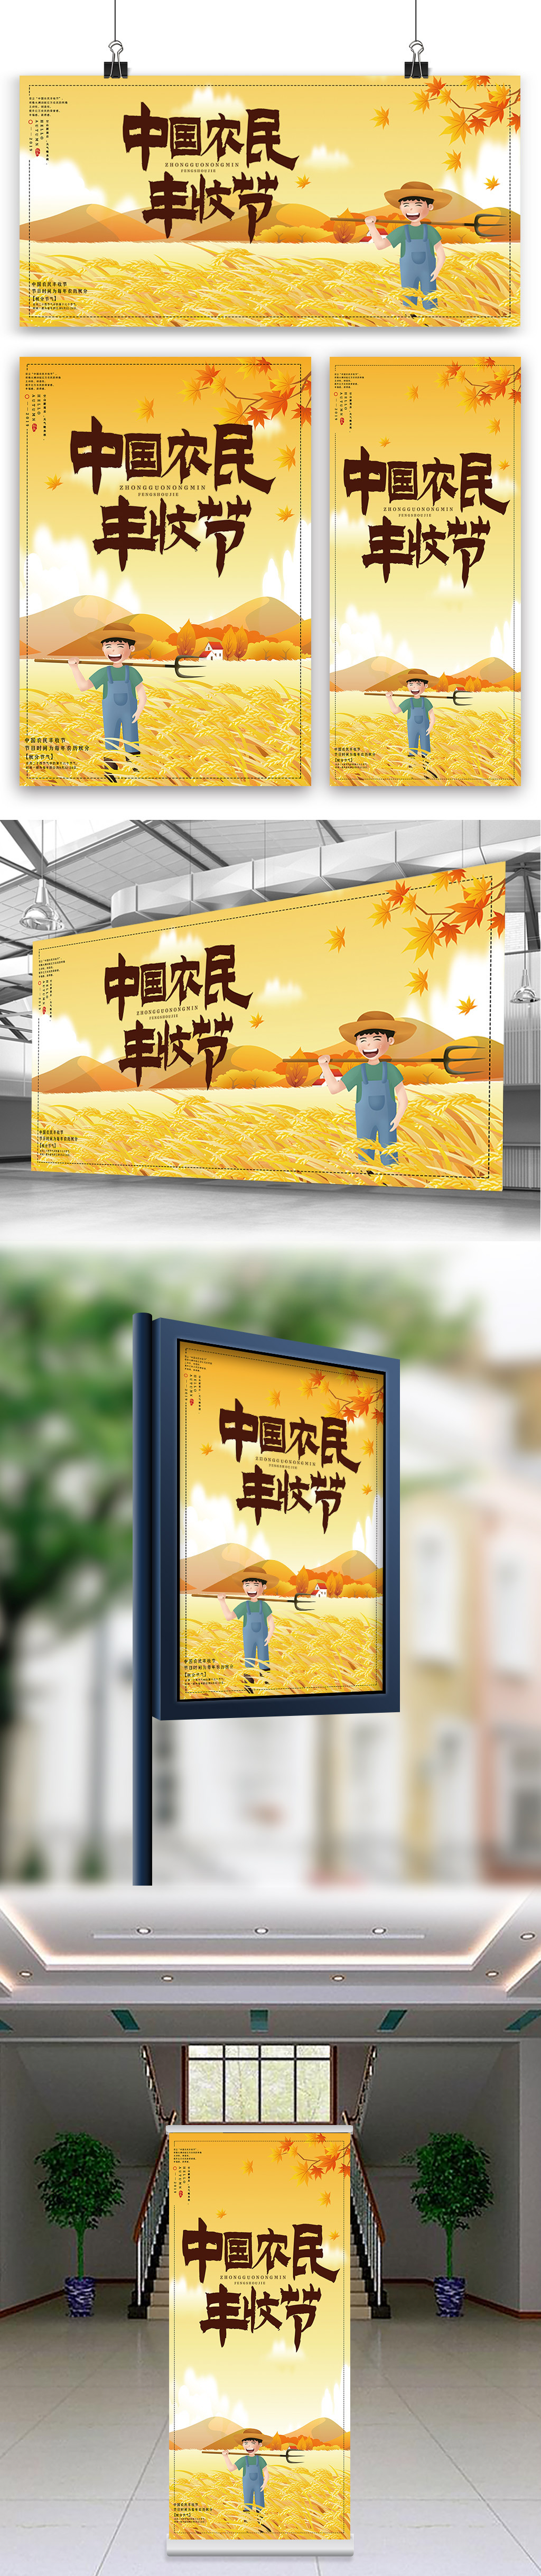 中国农民丰收节海报展板展架三件套图片